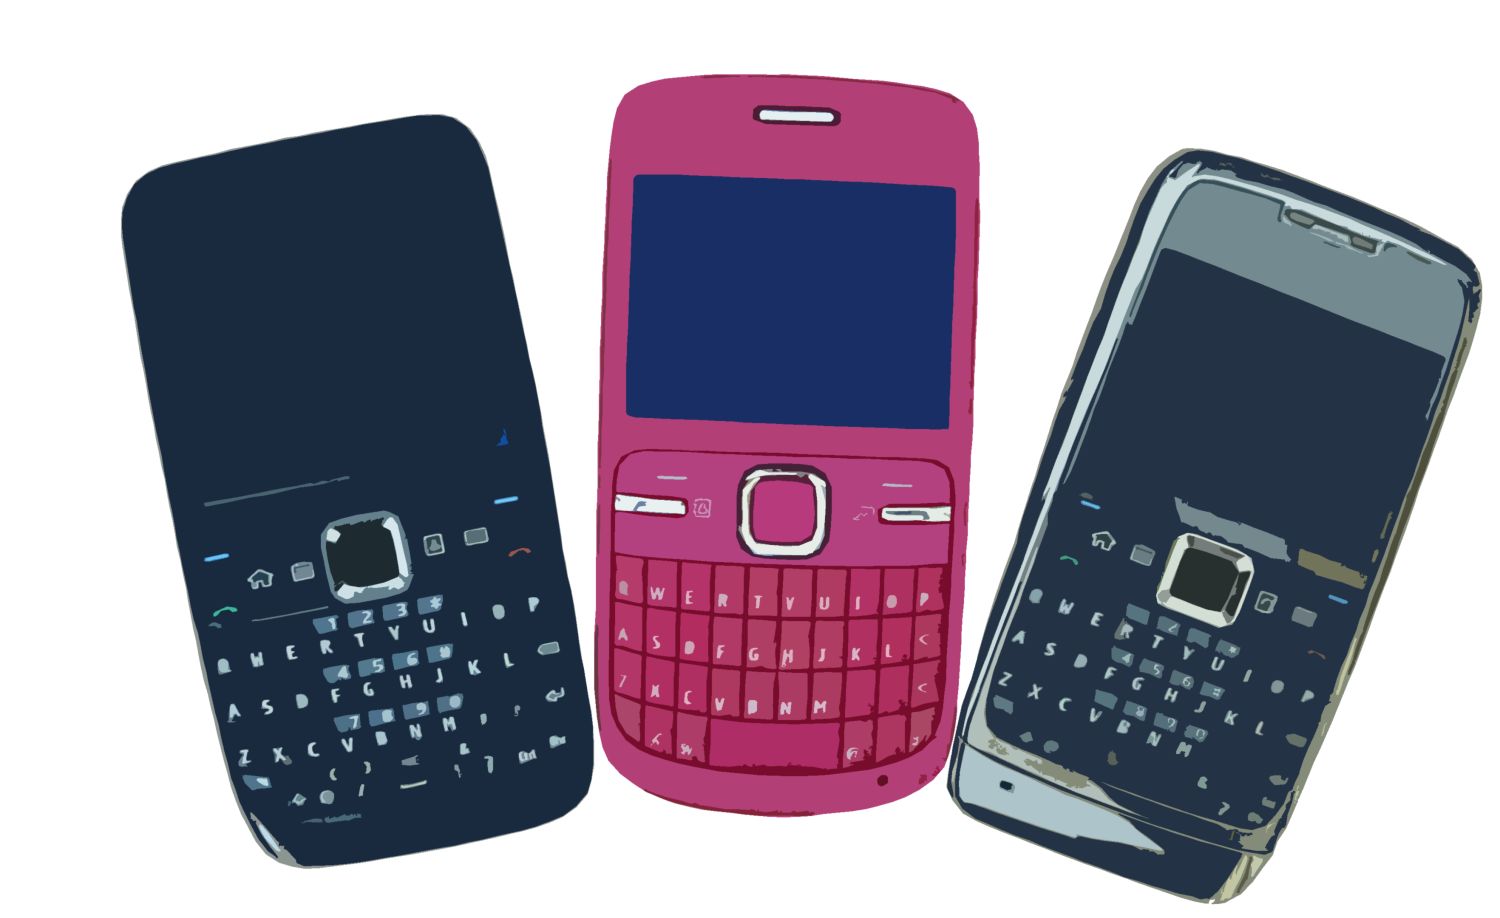 키패드 벽지,휴대 전화,간단한 기계 장치,통신 장치,피처 폰,휴대용 통신 장치